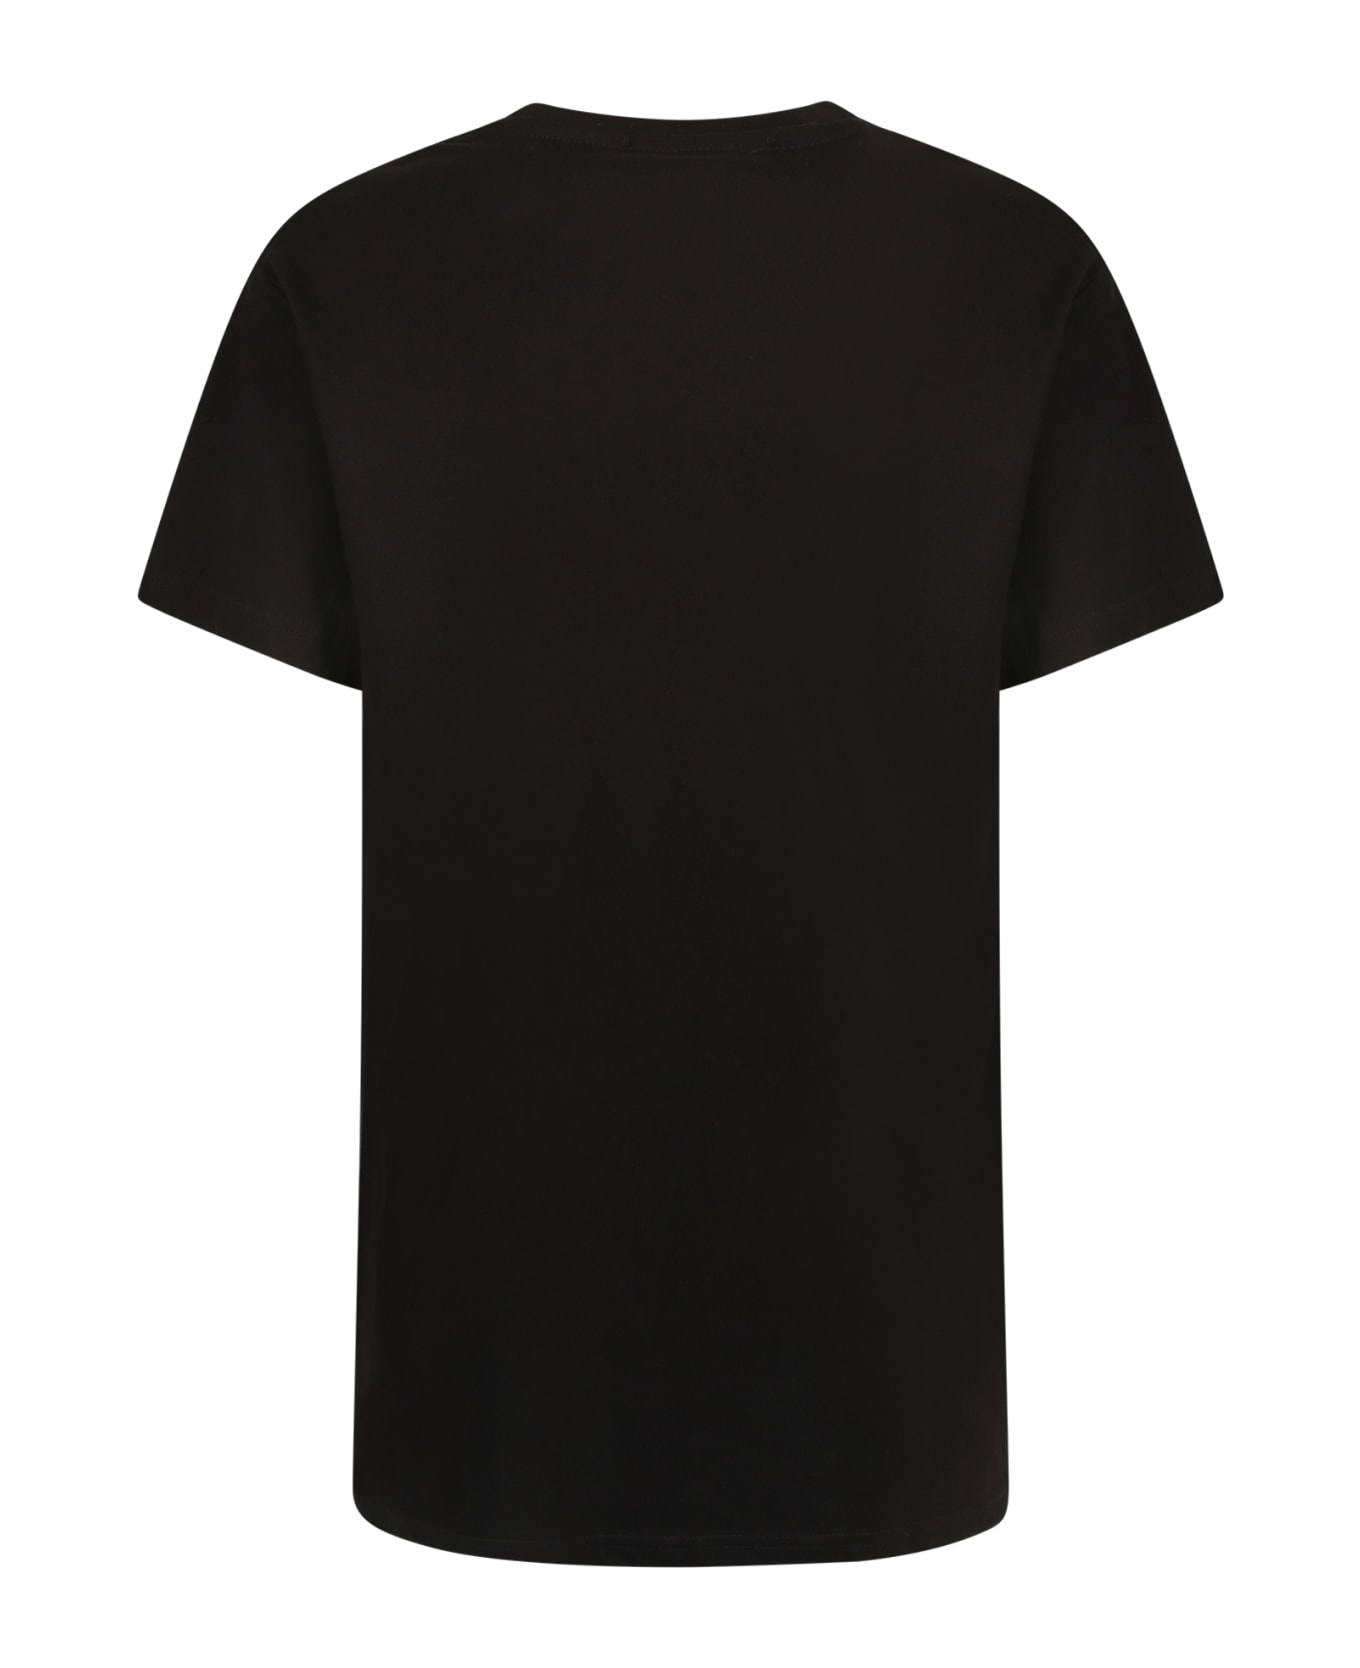 Alessandro Enriquez Cotton T-shirt - Black Tシャツ